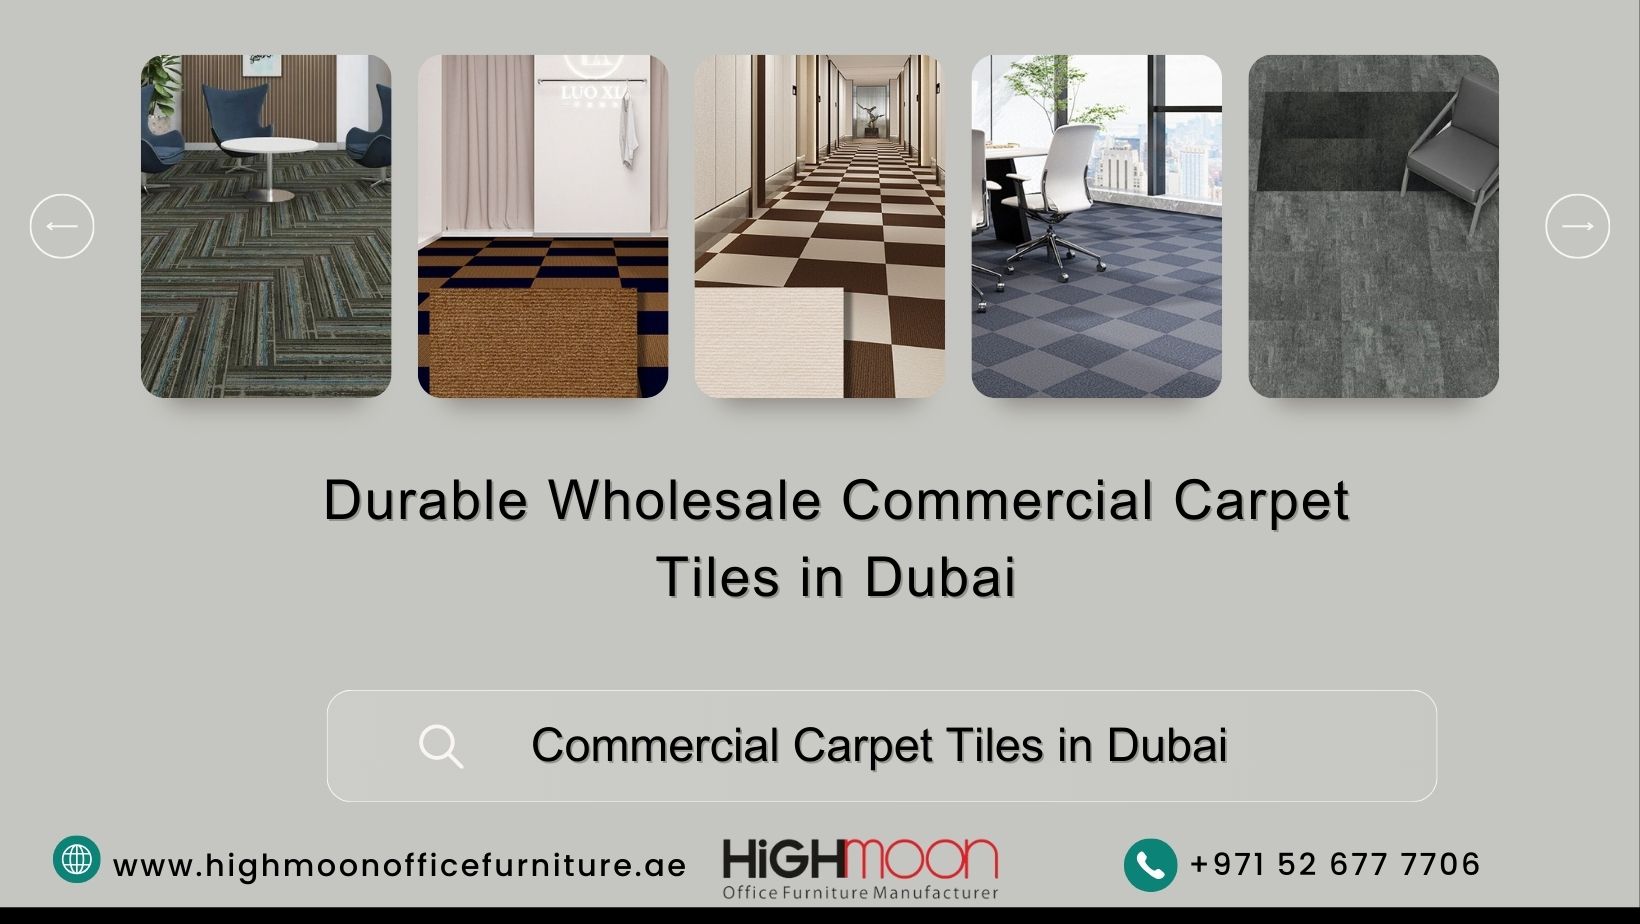 Dubai’s Commercial Carpet Tiles Suppliers for Wholesale Price